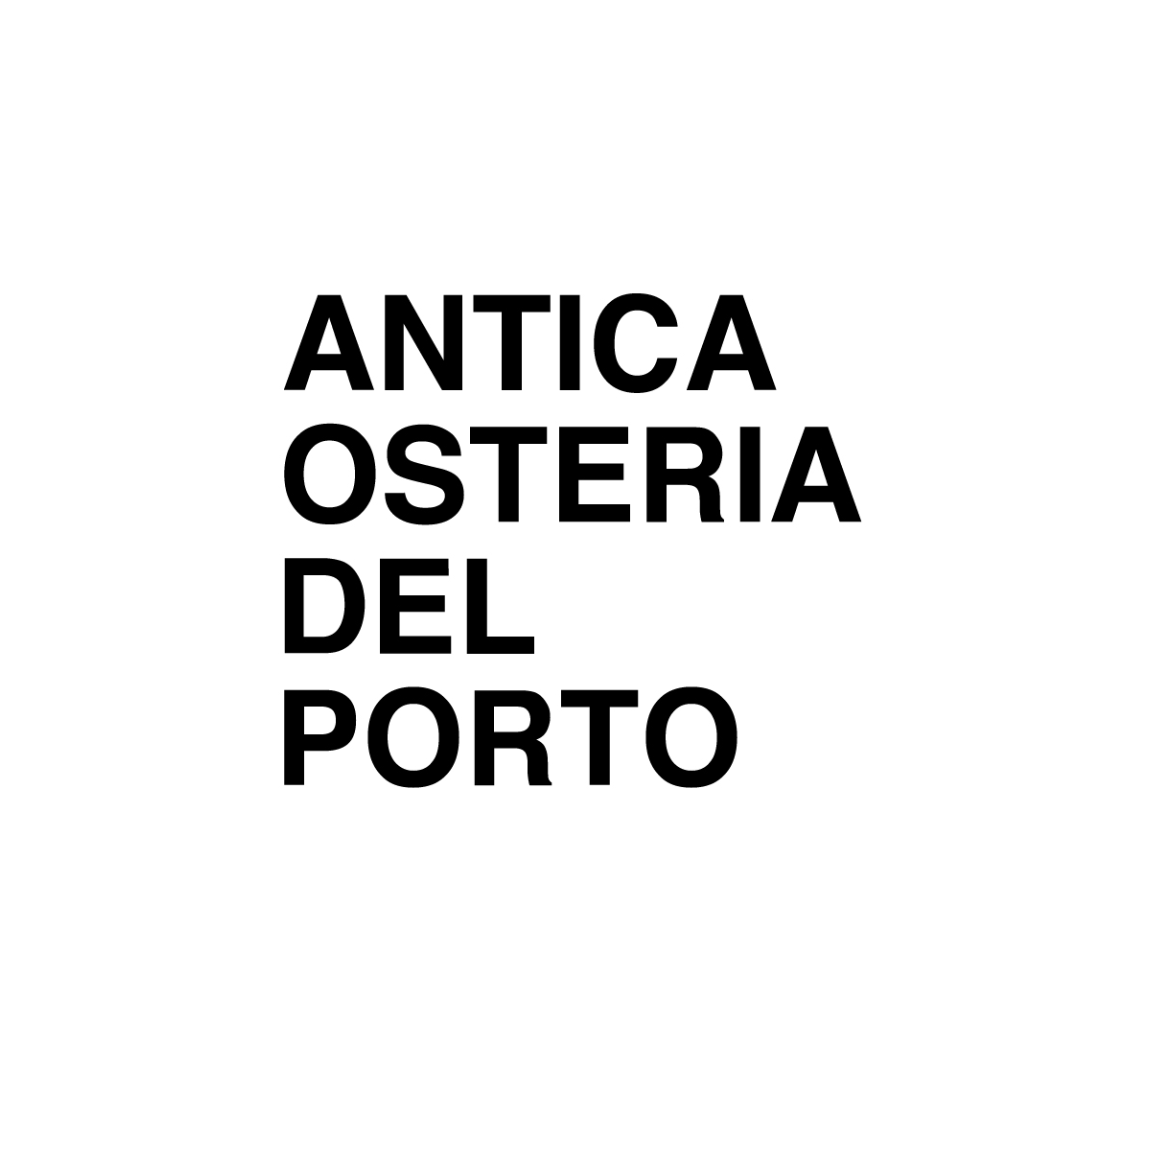 ANTICA OSTERIA DEL PORTO Logo